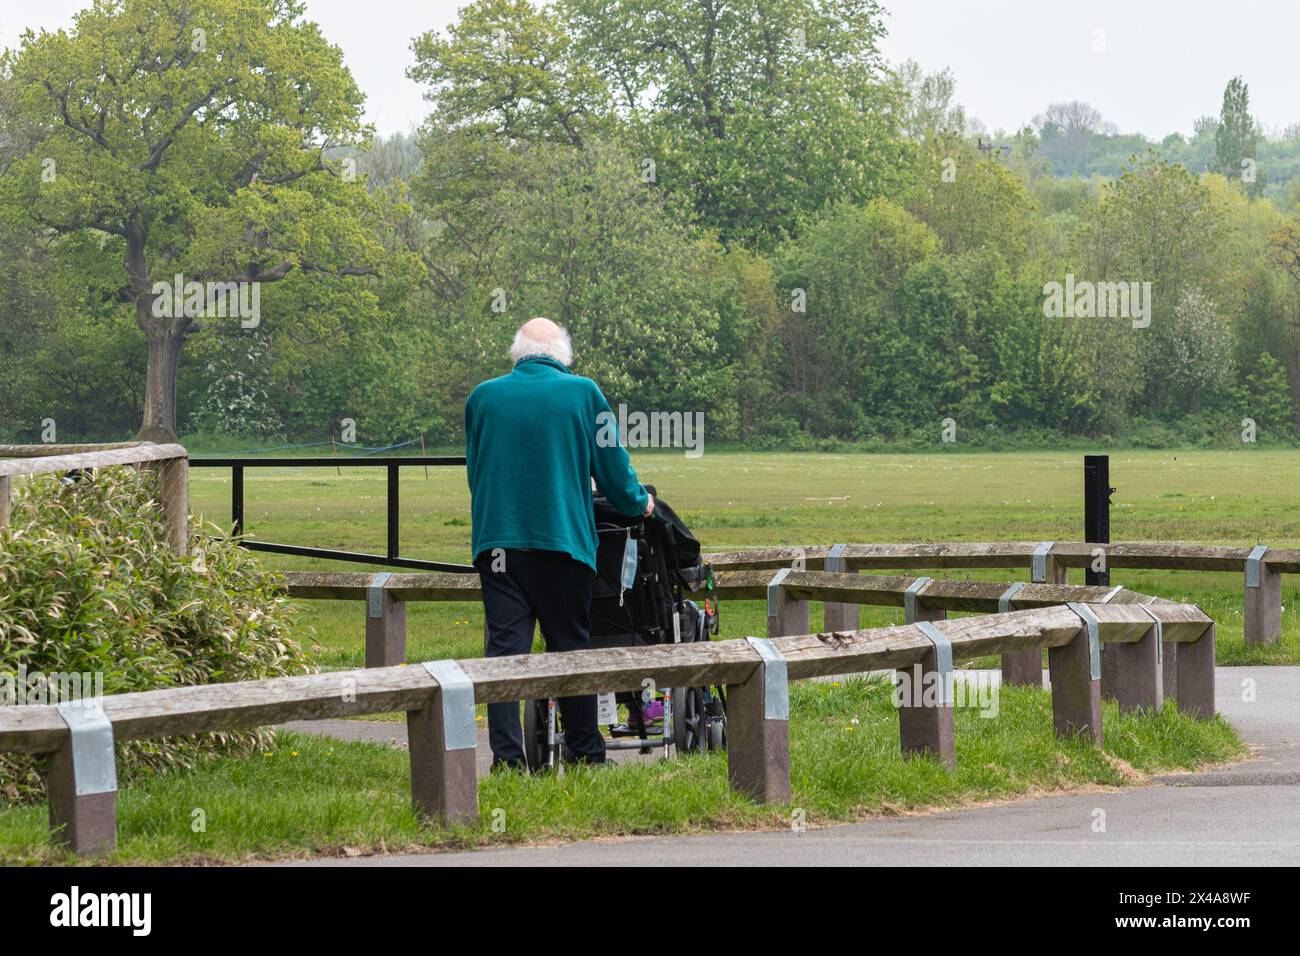 Homme âgé s'occupant de sa femme handicapée en fauteuil roulant, Angleterre, Royaume-Uni. Concept : soignants non rémunérés, prestations de soins inadéquates pour les personnes âgées et handicapées Banque D'Images